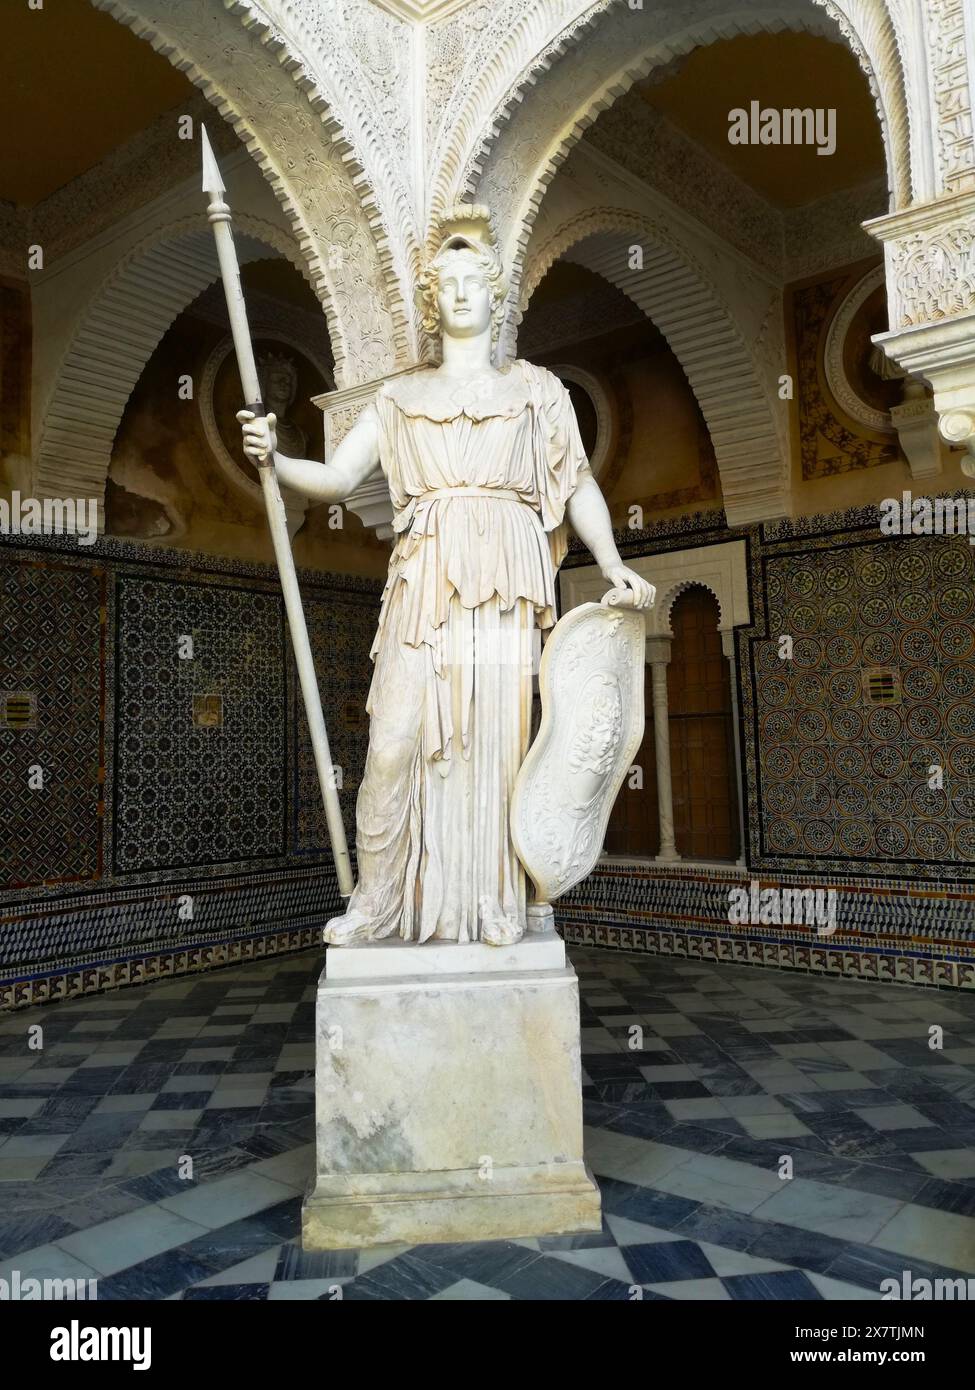 Statua di Pallade Atena nel cortile del palazzo in stile mudejar del xvi secolo Casa de Pilatos a Siviglia, Andalusia, Spagna Foto Stock